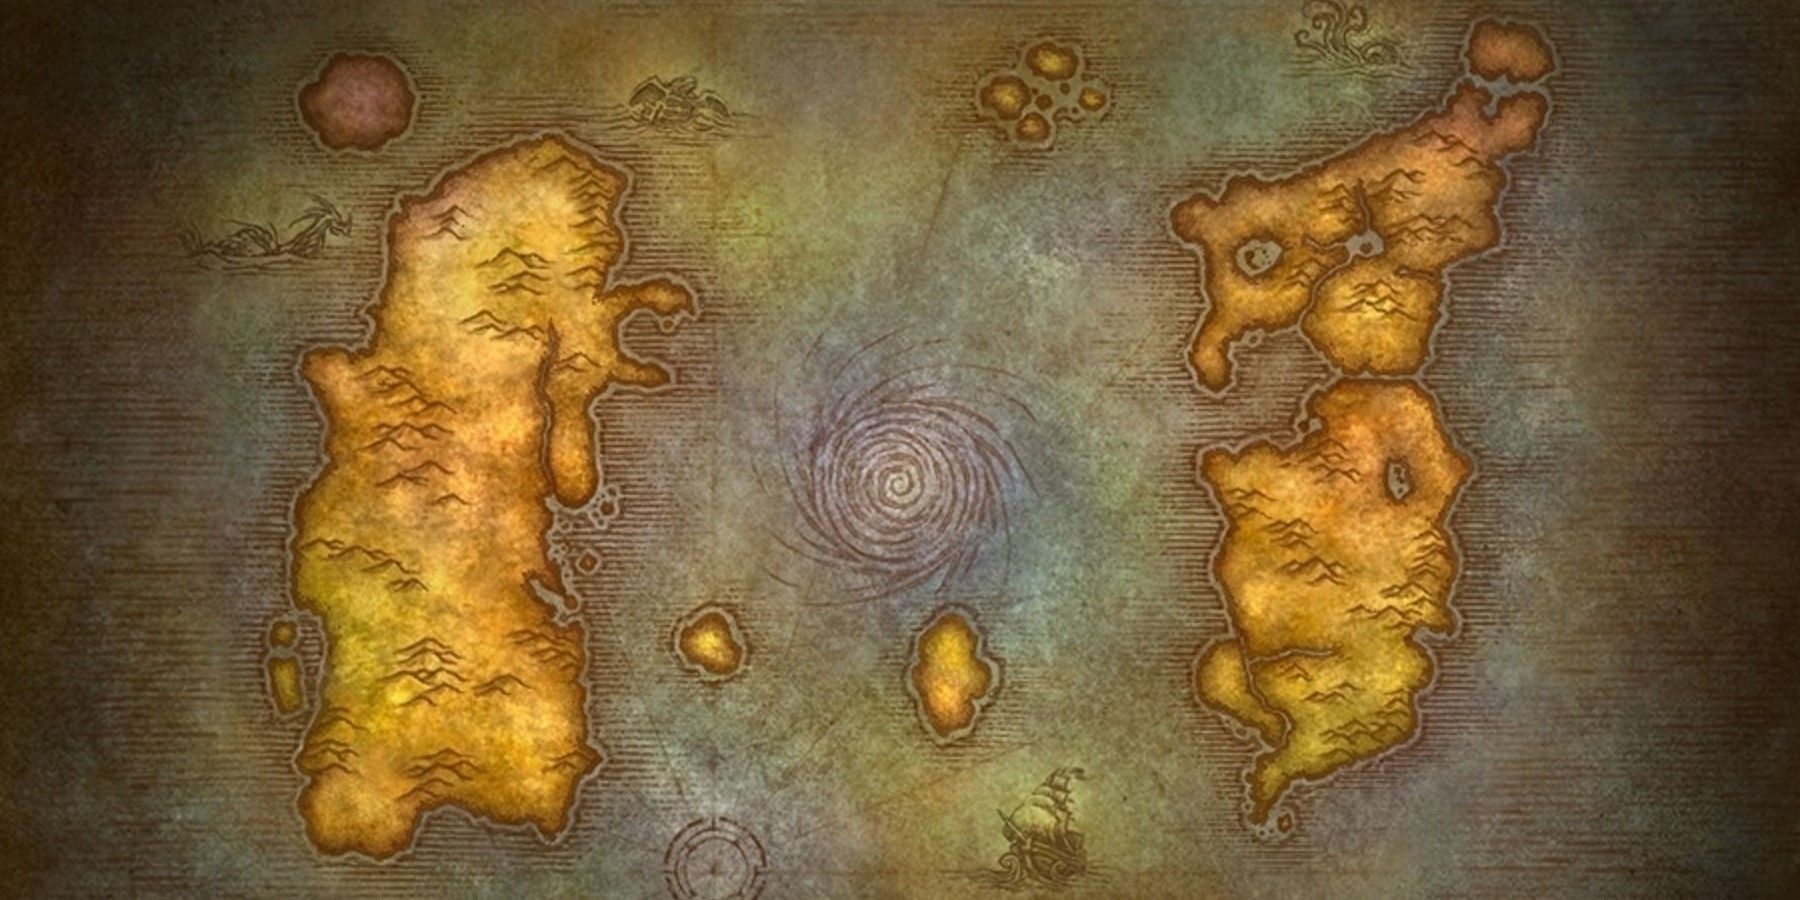 World of Warcraft -speler maakt kaart van Europese landen in de stijl van WOW Classic